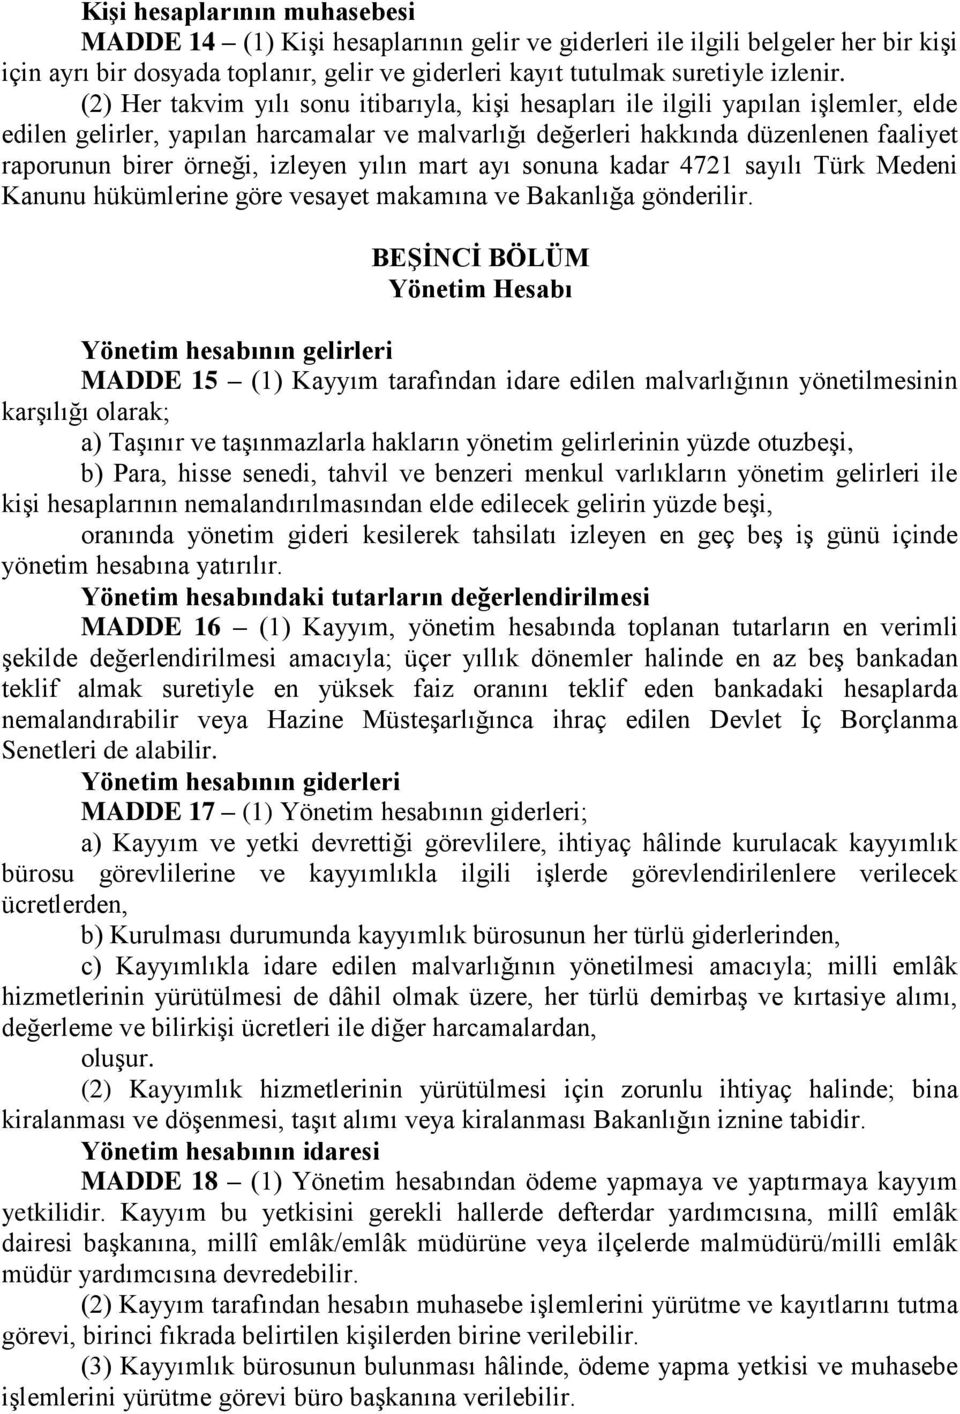 izleyen yılın mart ayı sonuna kadar 4721 sayılı Türk Medeni Kanunu hükümlerine göre vesayet makamına ve Bakanlığa gönderilir.